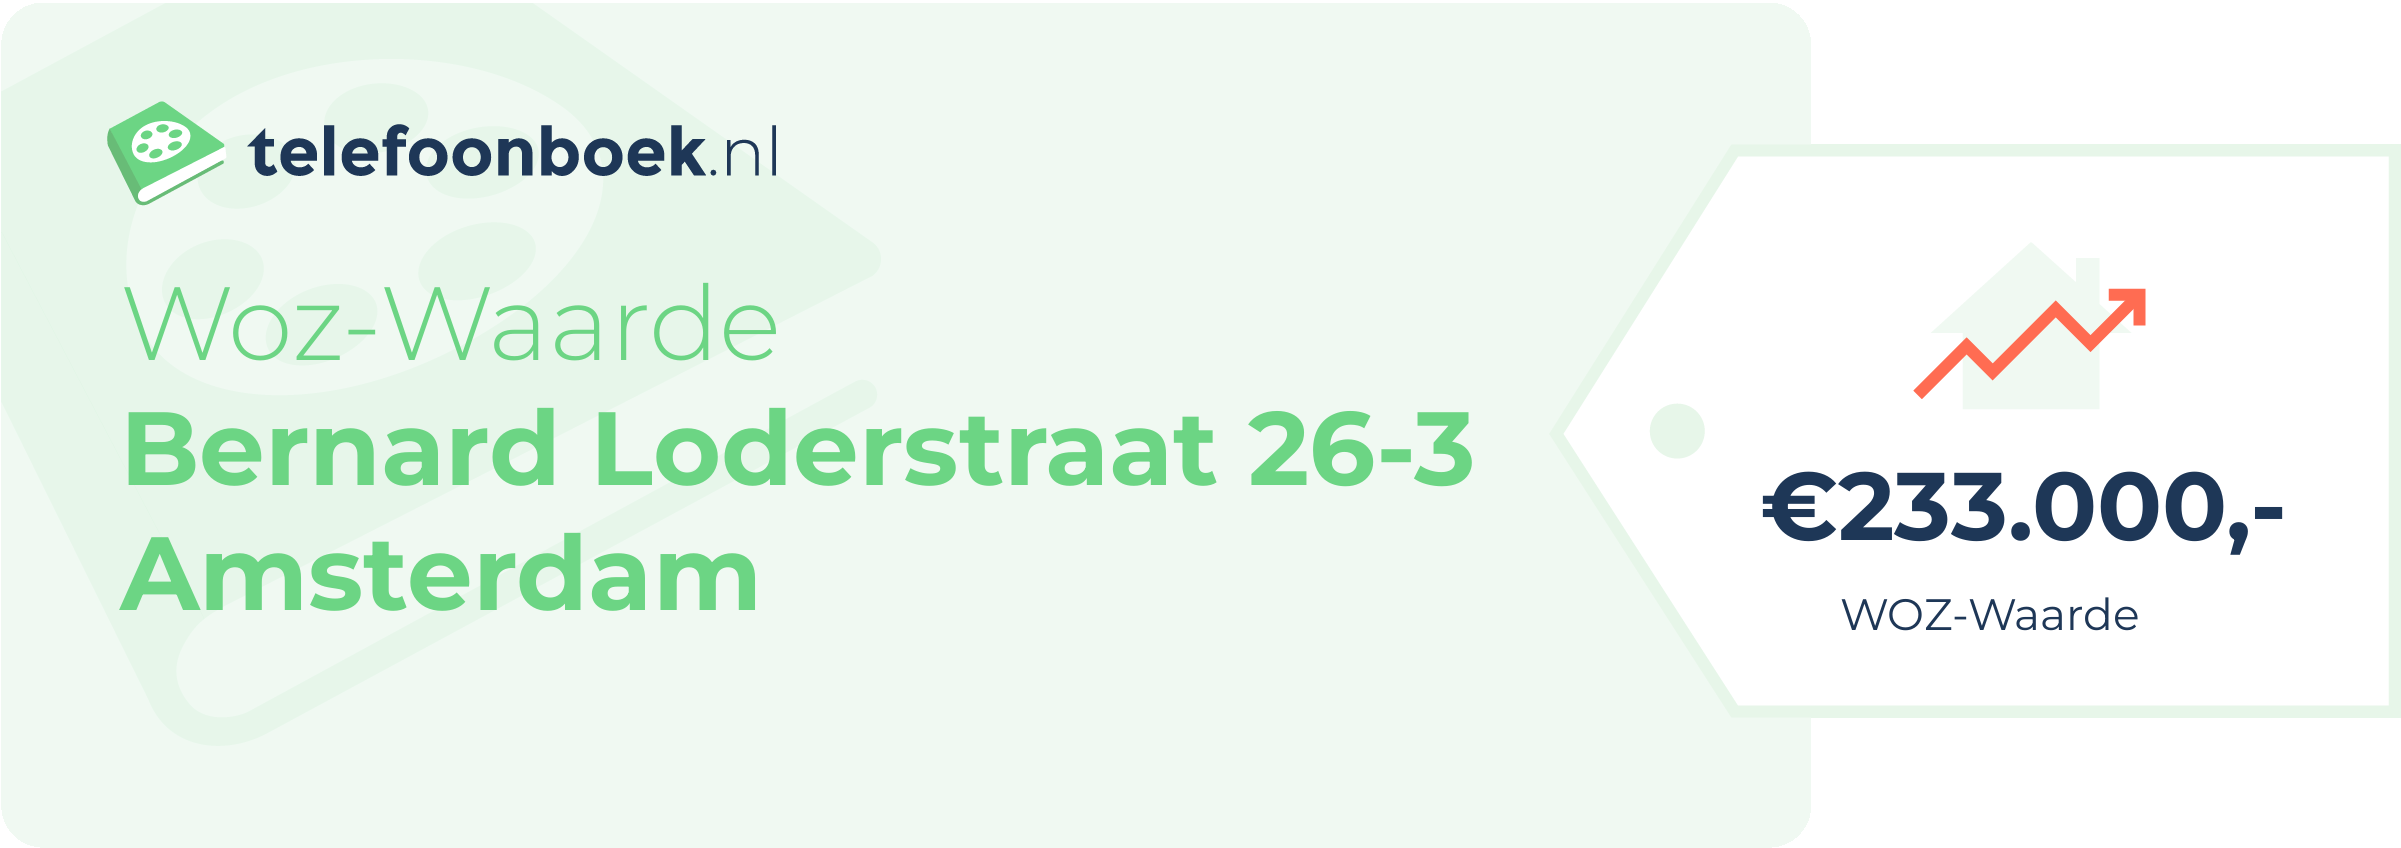 WOZ-waarde Bernard Loderstraat 26-3 Amsterdam